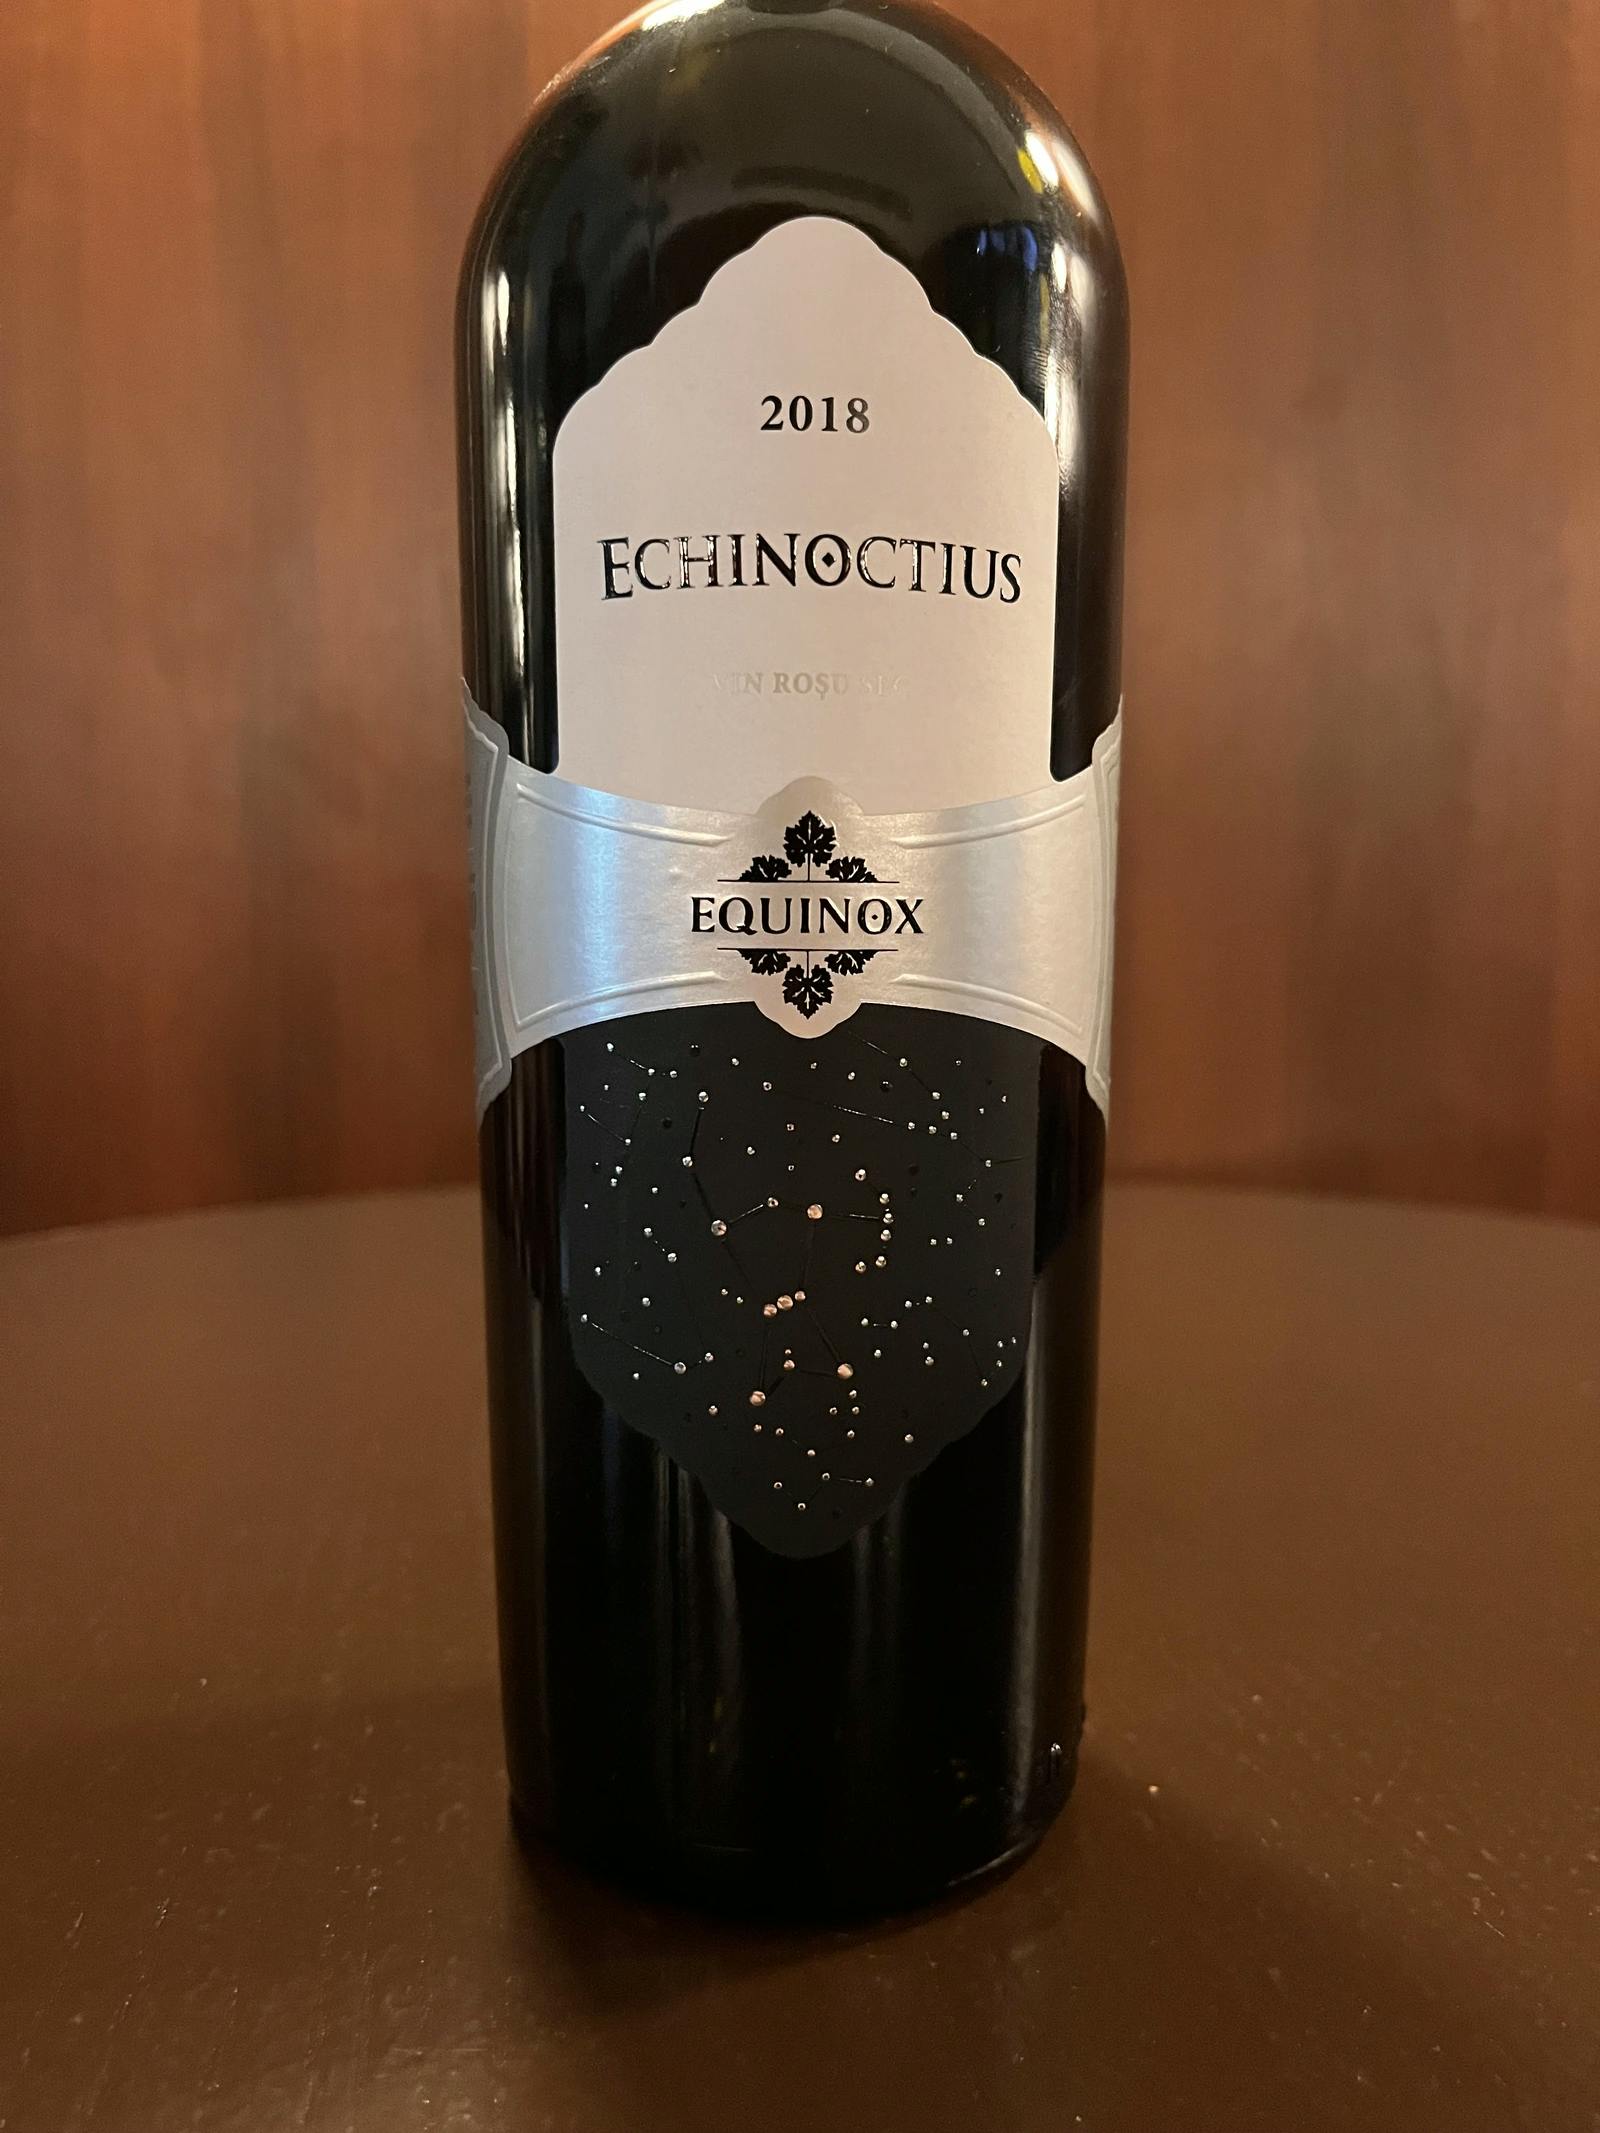 Equinox Echinoctius 2018